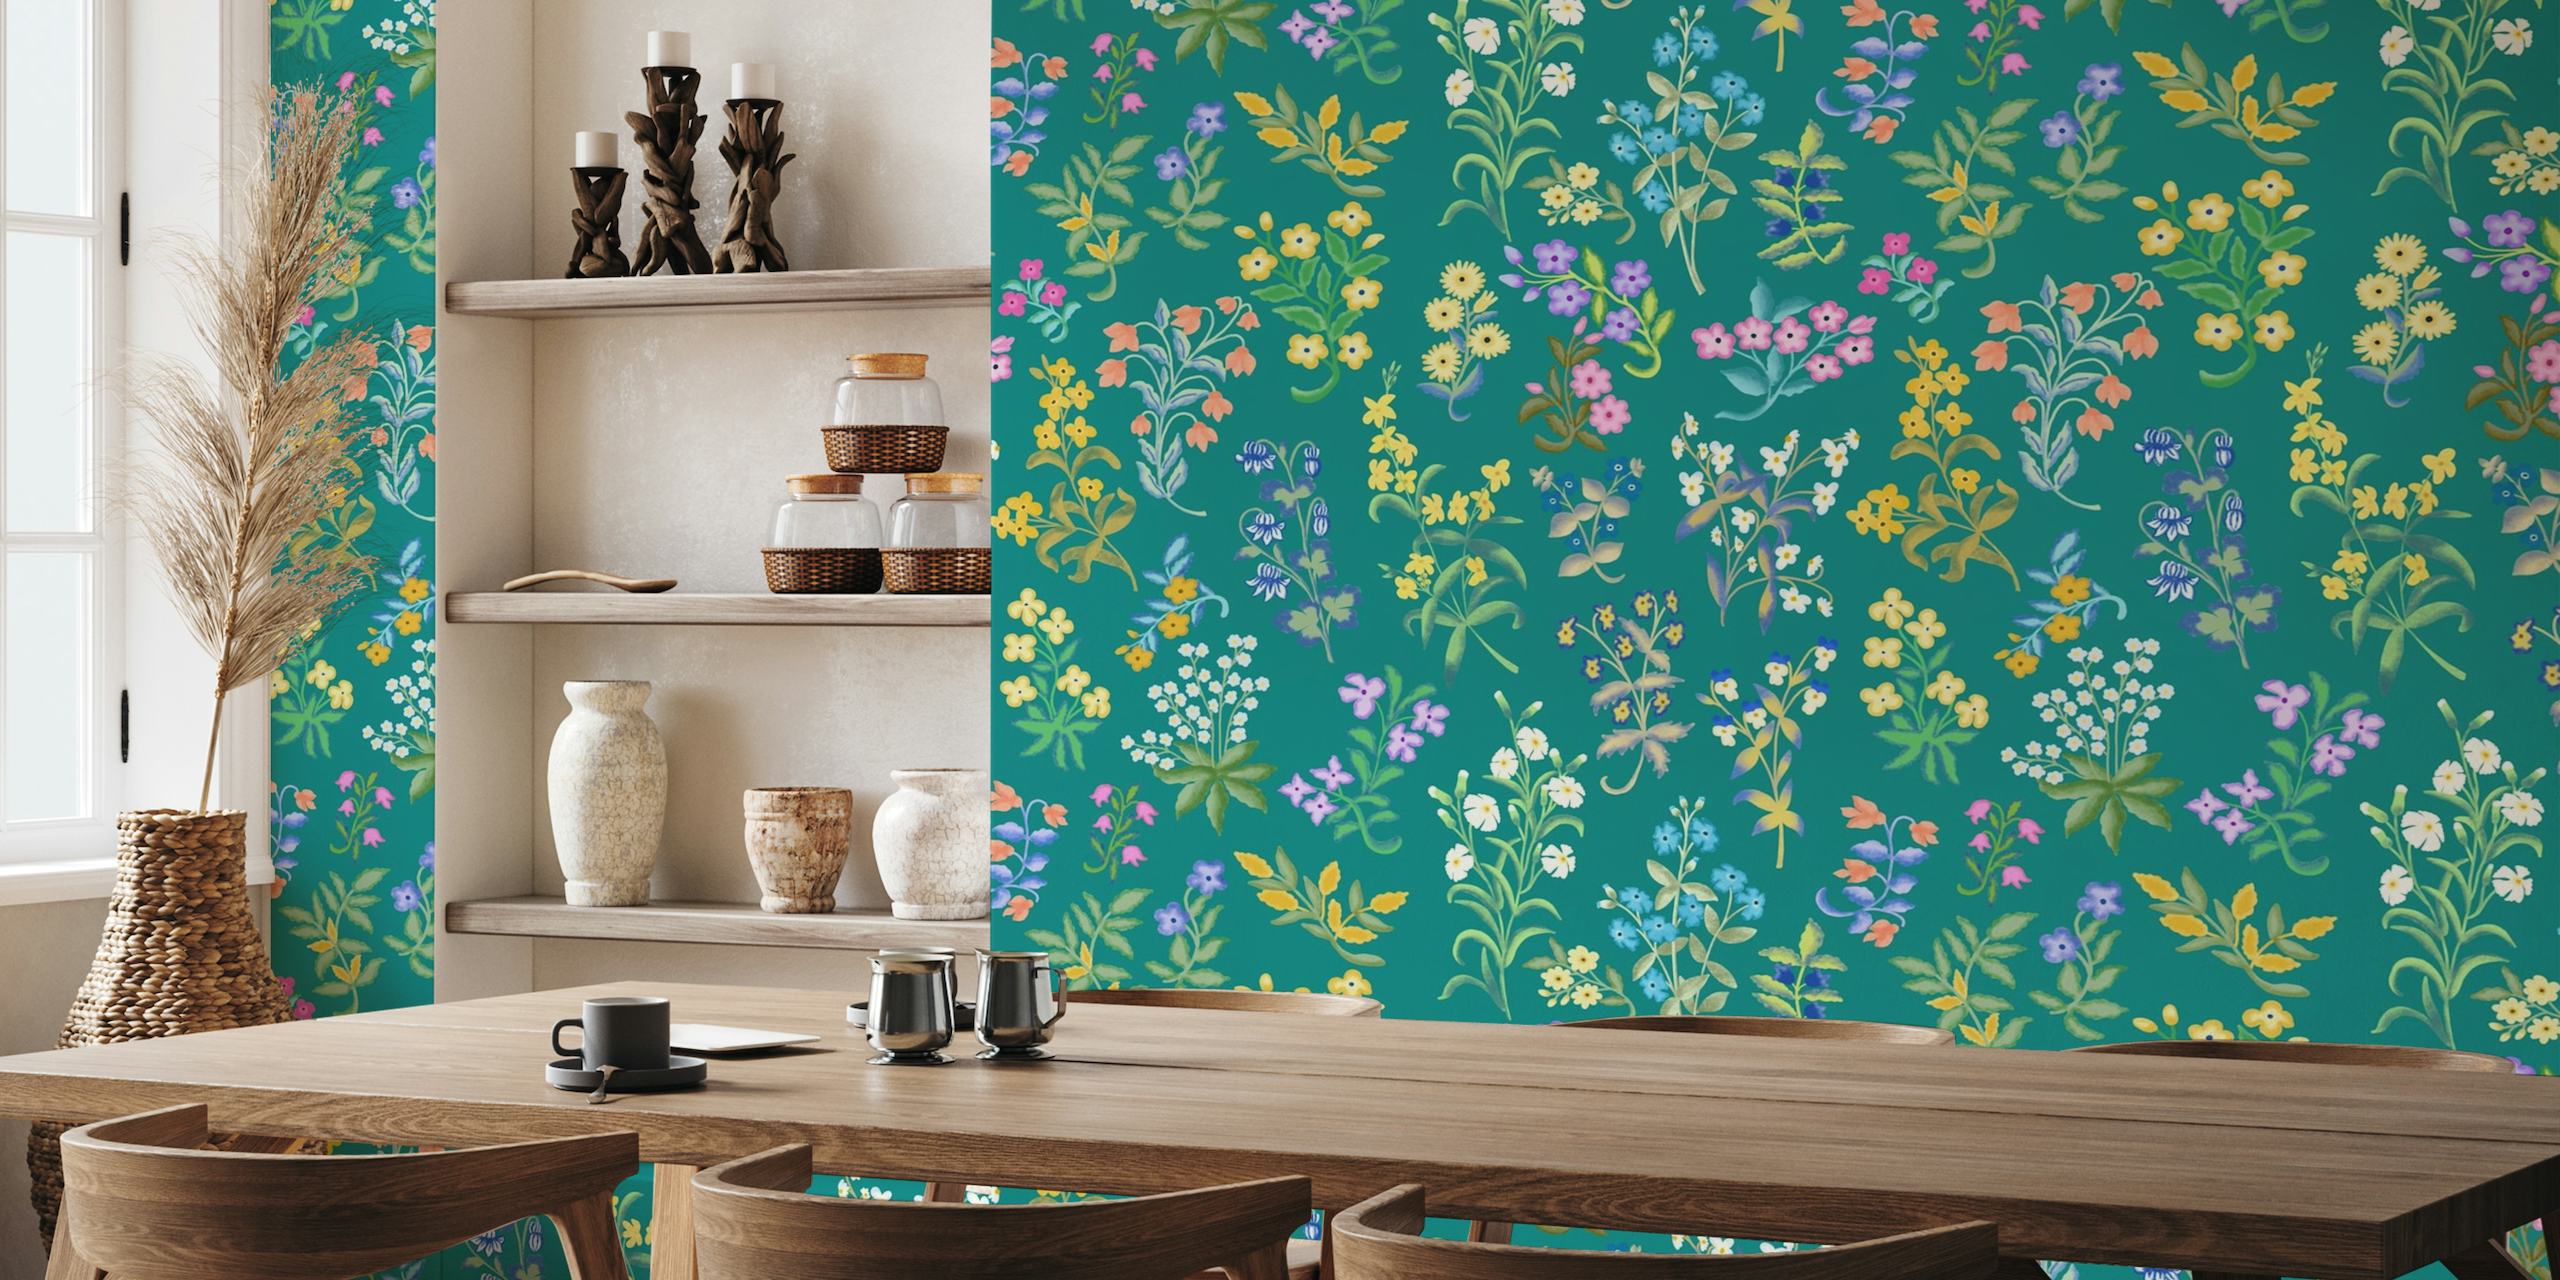 Fototapete mit floralem Millefleurs-Muster und Wildblumen auf blaugrünem Hintergrund